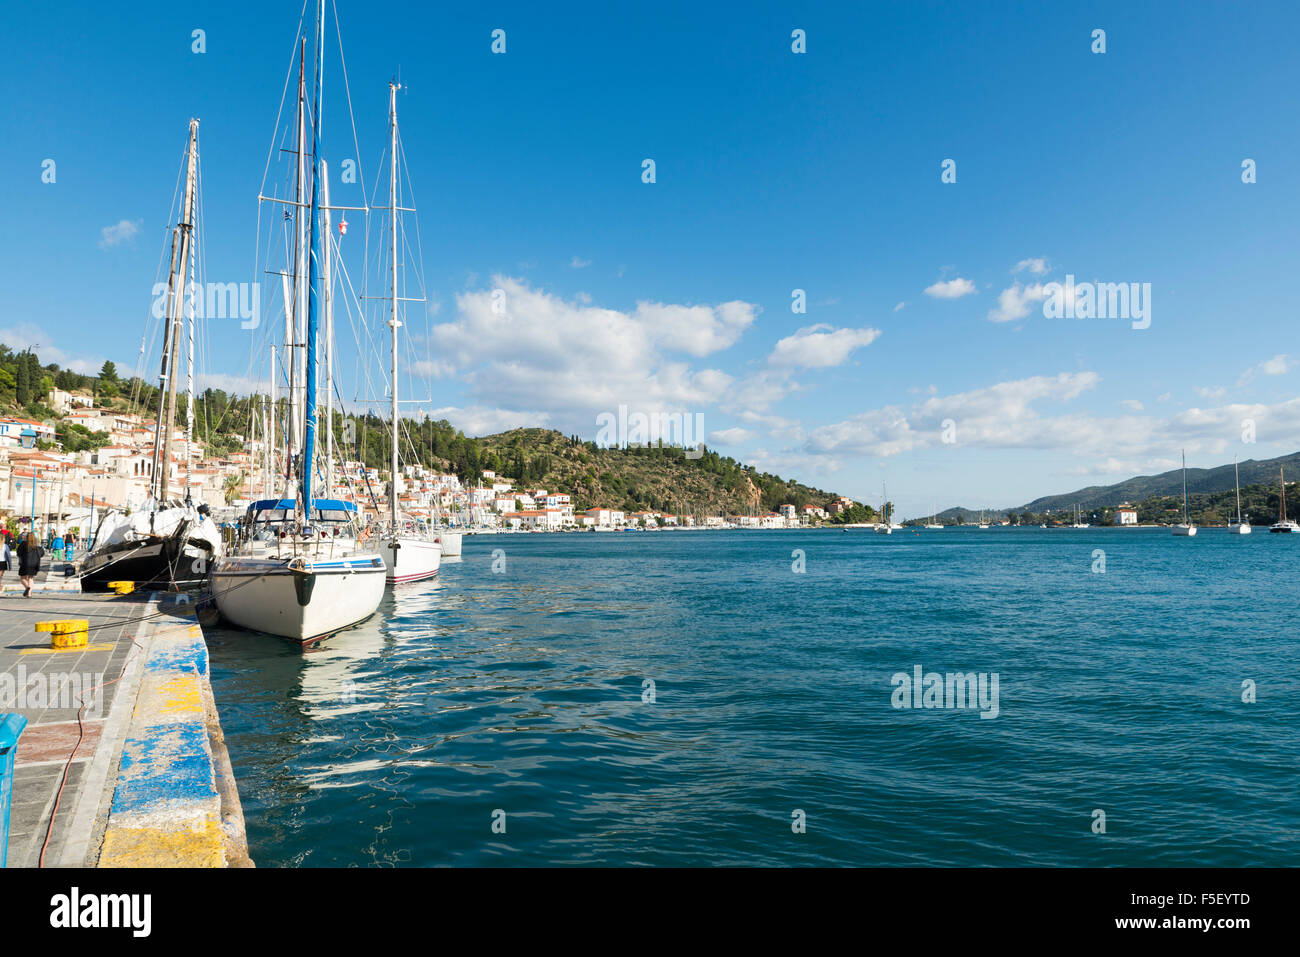 POROS GRECIA-ottobre 25, 2015: Marina di Poros è un'isola greca nella parte meridionale del Golfo di Saronico. Si tratta di un popolare di fine settimana de Foto Stock